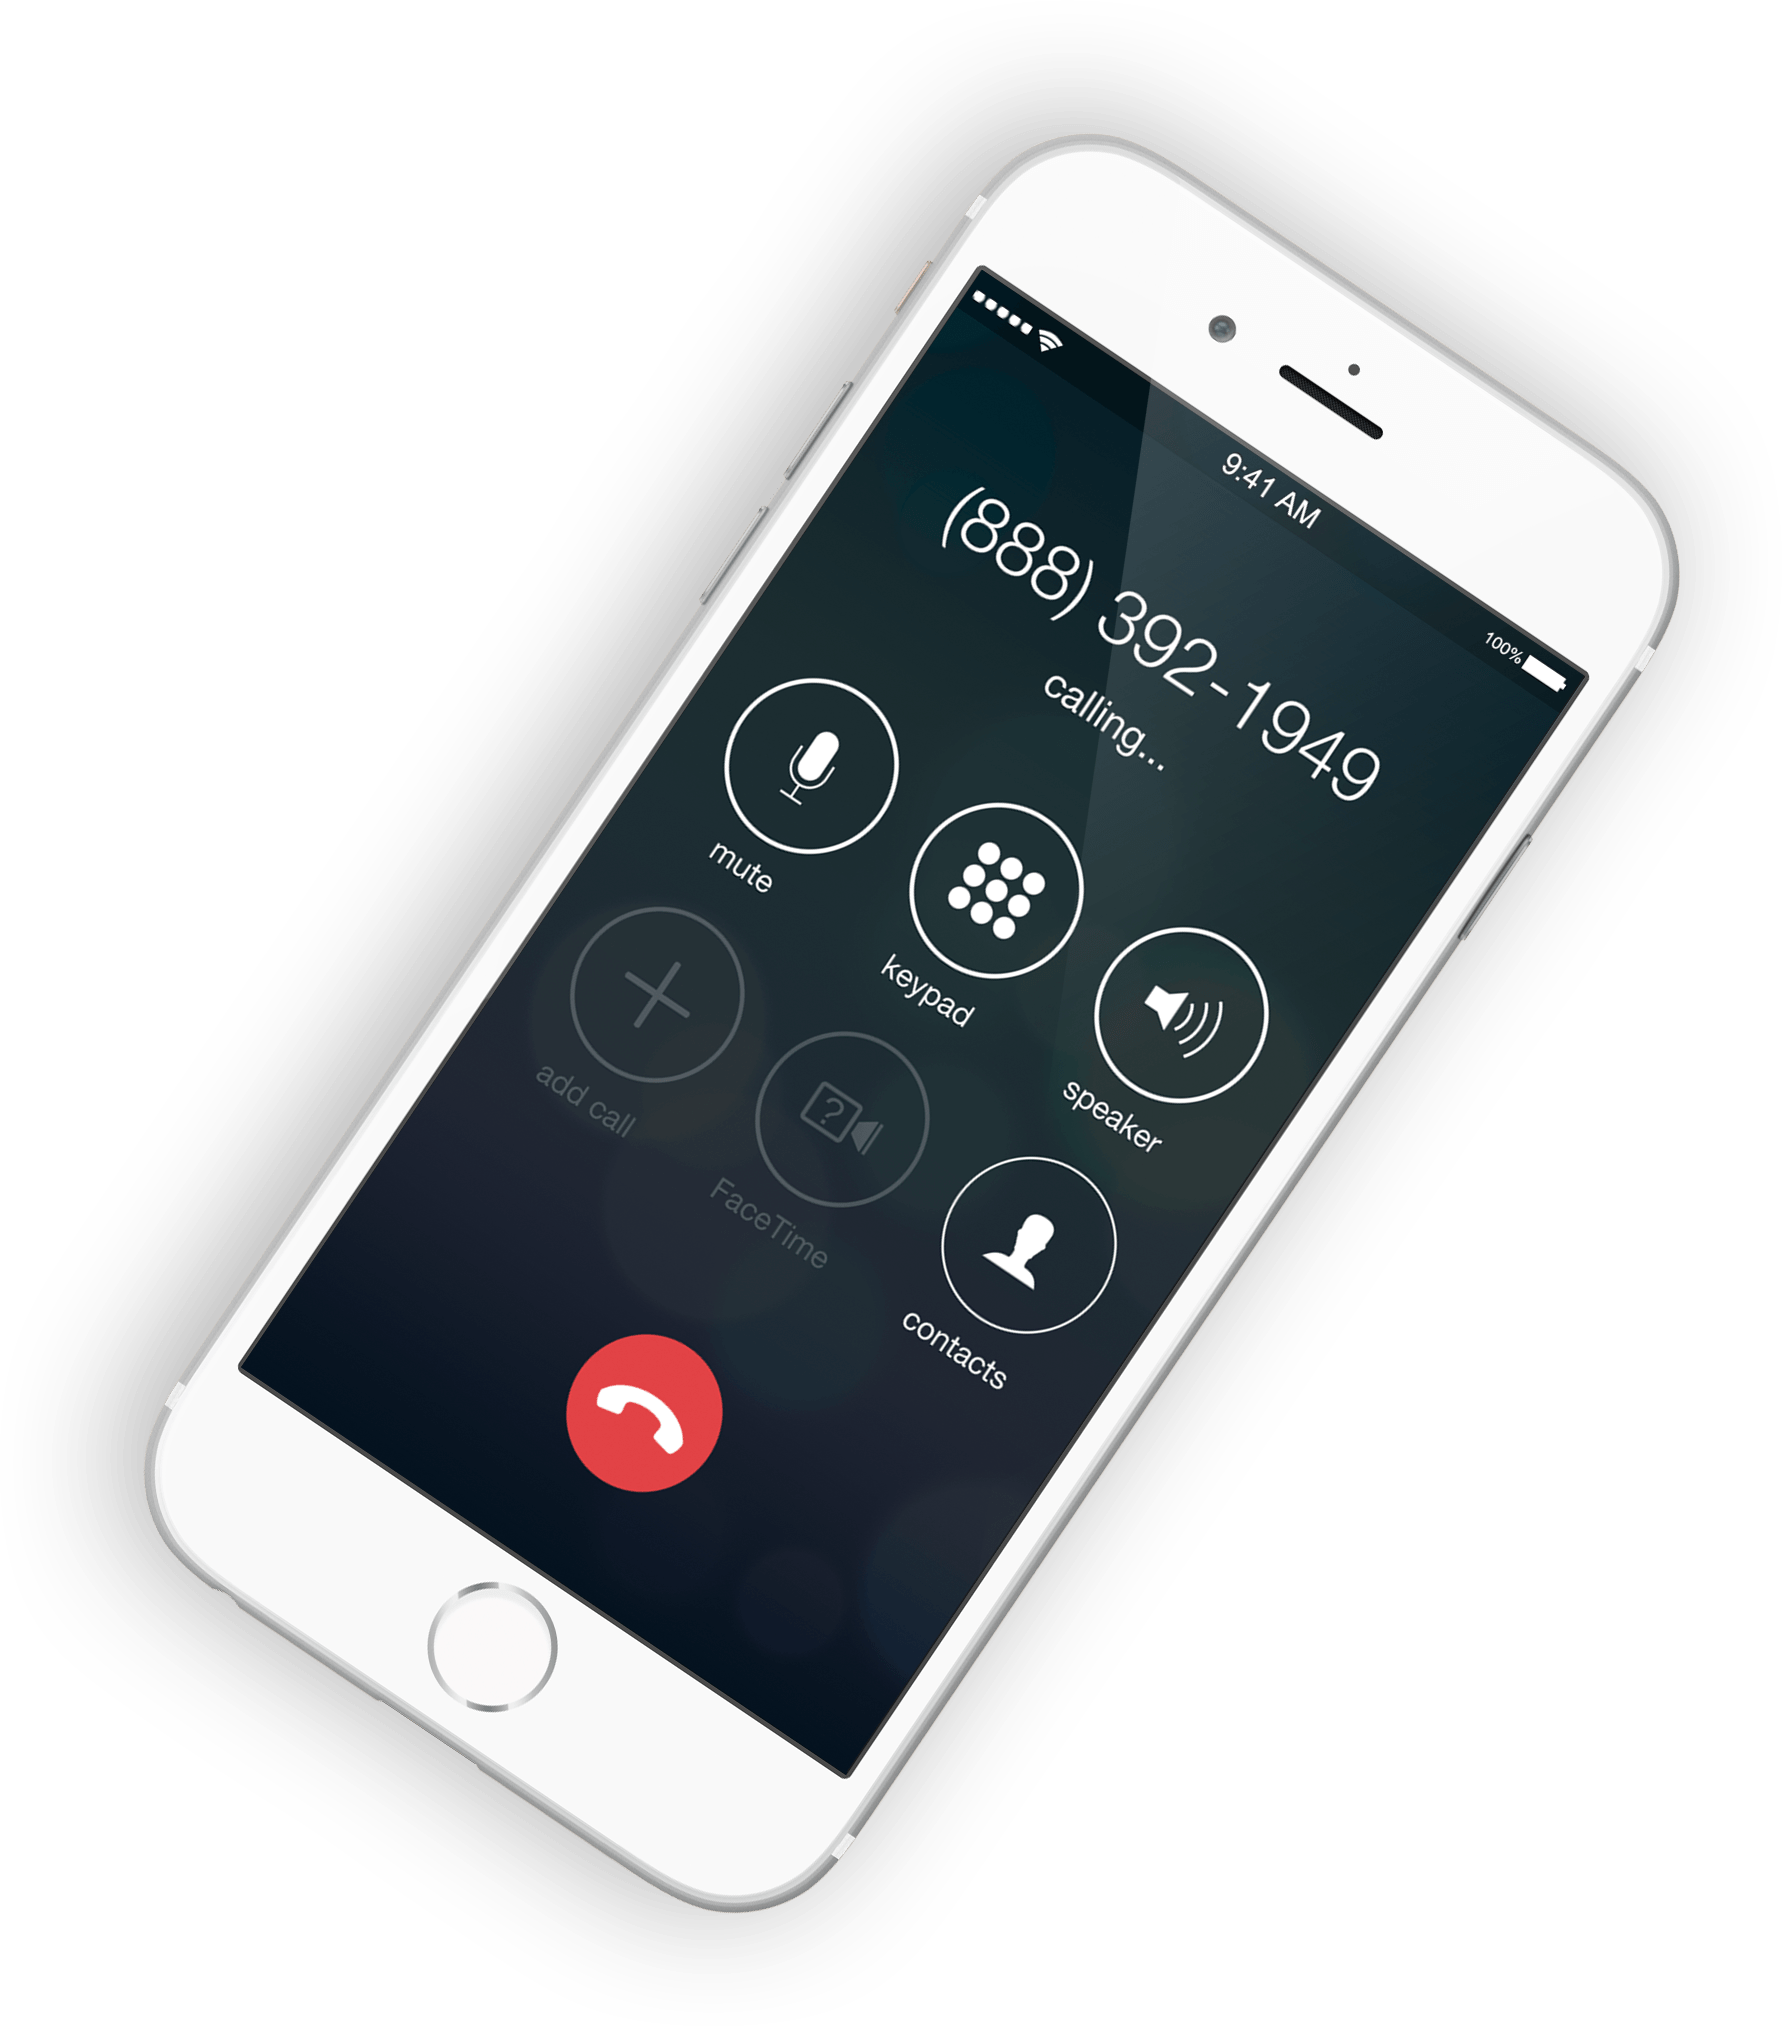 Cara Membuat Ponsel Anda Mengatakan Siapa yang Memanggil di iPhone